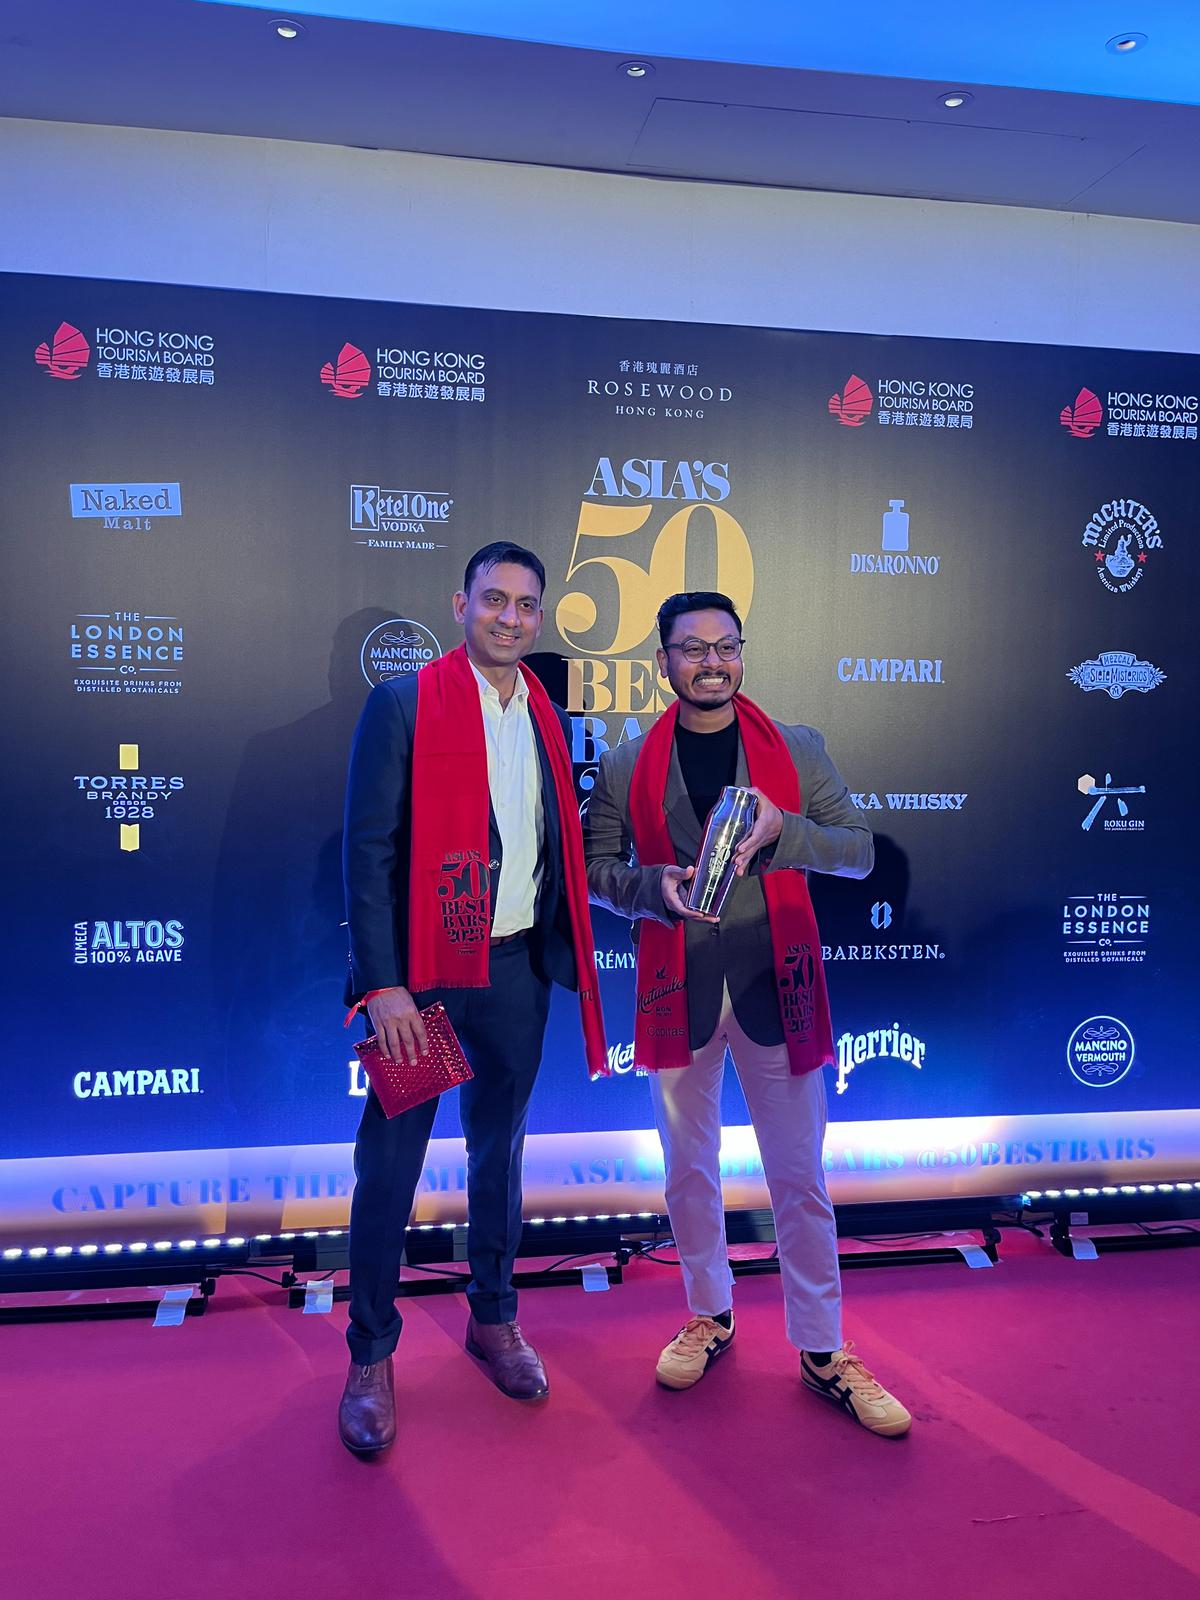 (बाएं से) हांगकांग में एशिया के 50 सर्वश्रेष्ठ बार्स पुरस्कार समारोह में फोर सीजन्स, बेंगलुरु के फूड एंड बेवरेज के निदेशक सवियो फर्नांडीस, कोपिटास के बेवरेज मैनेजर सारथ नायर के साथ। 